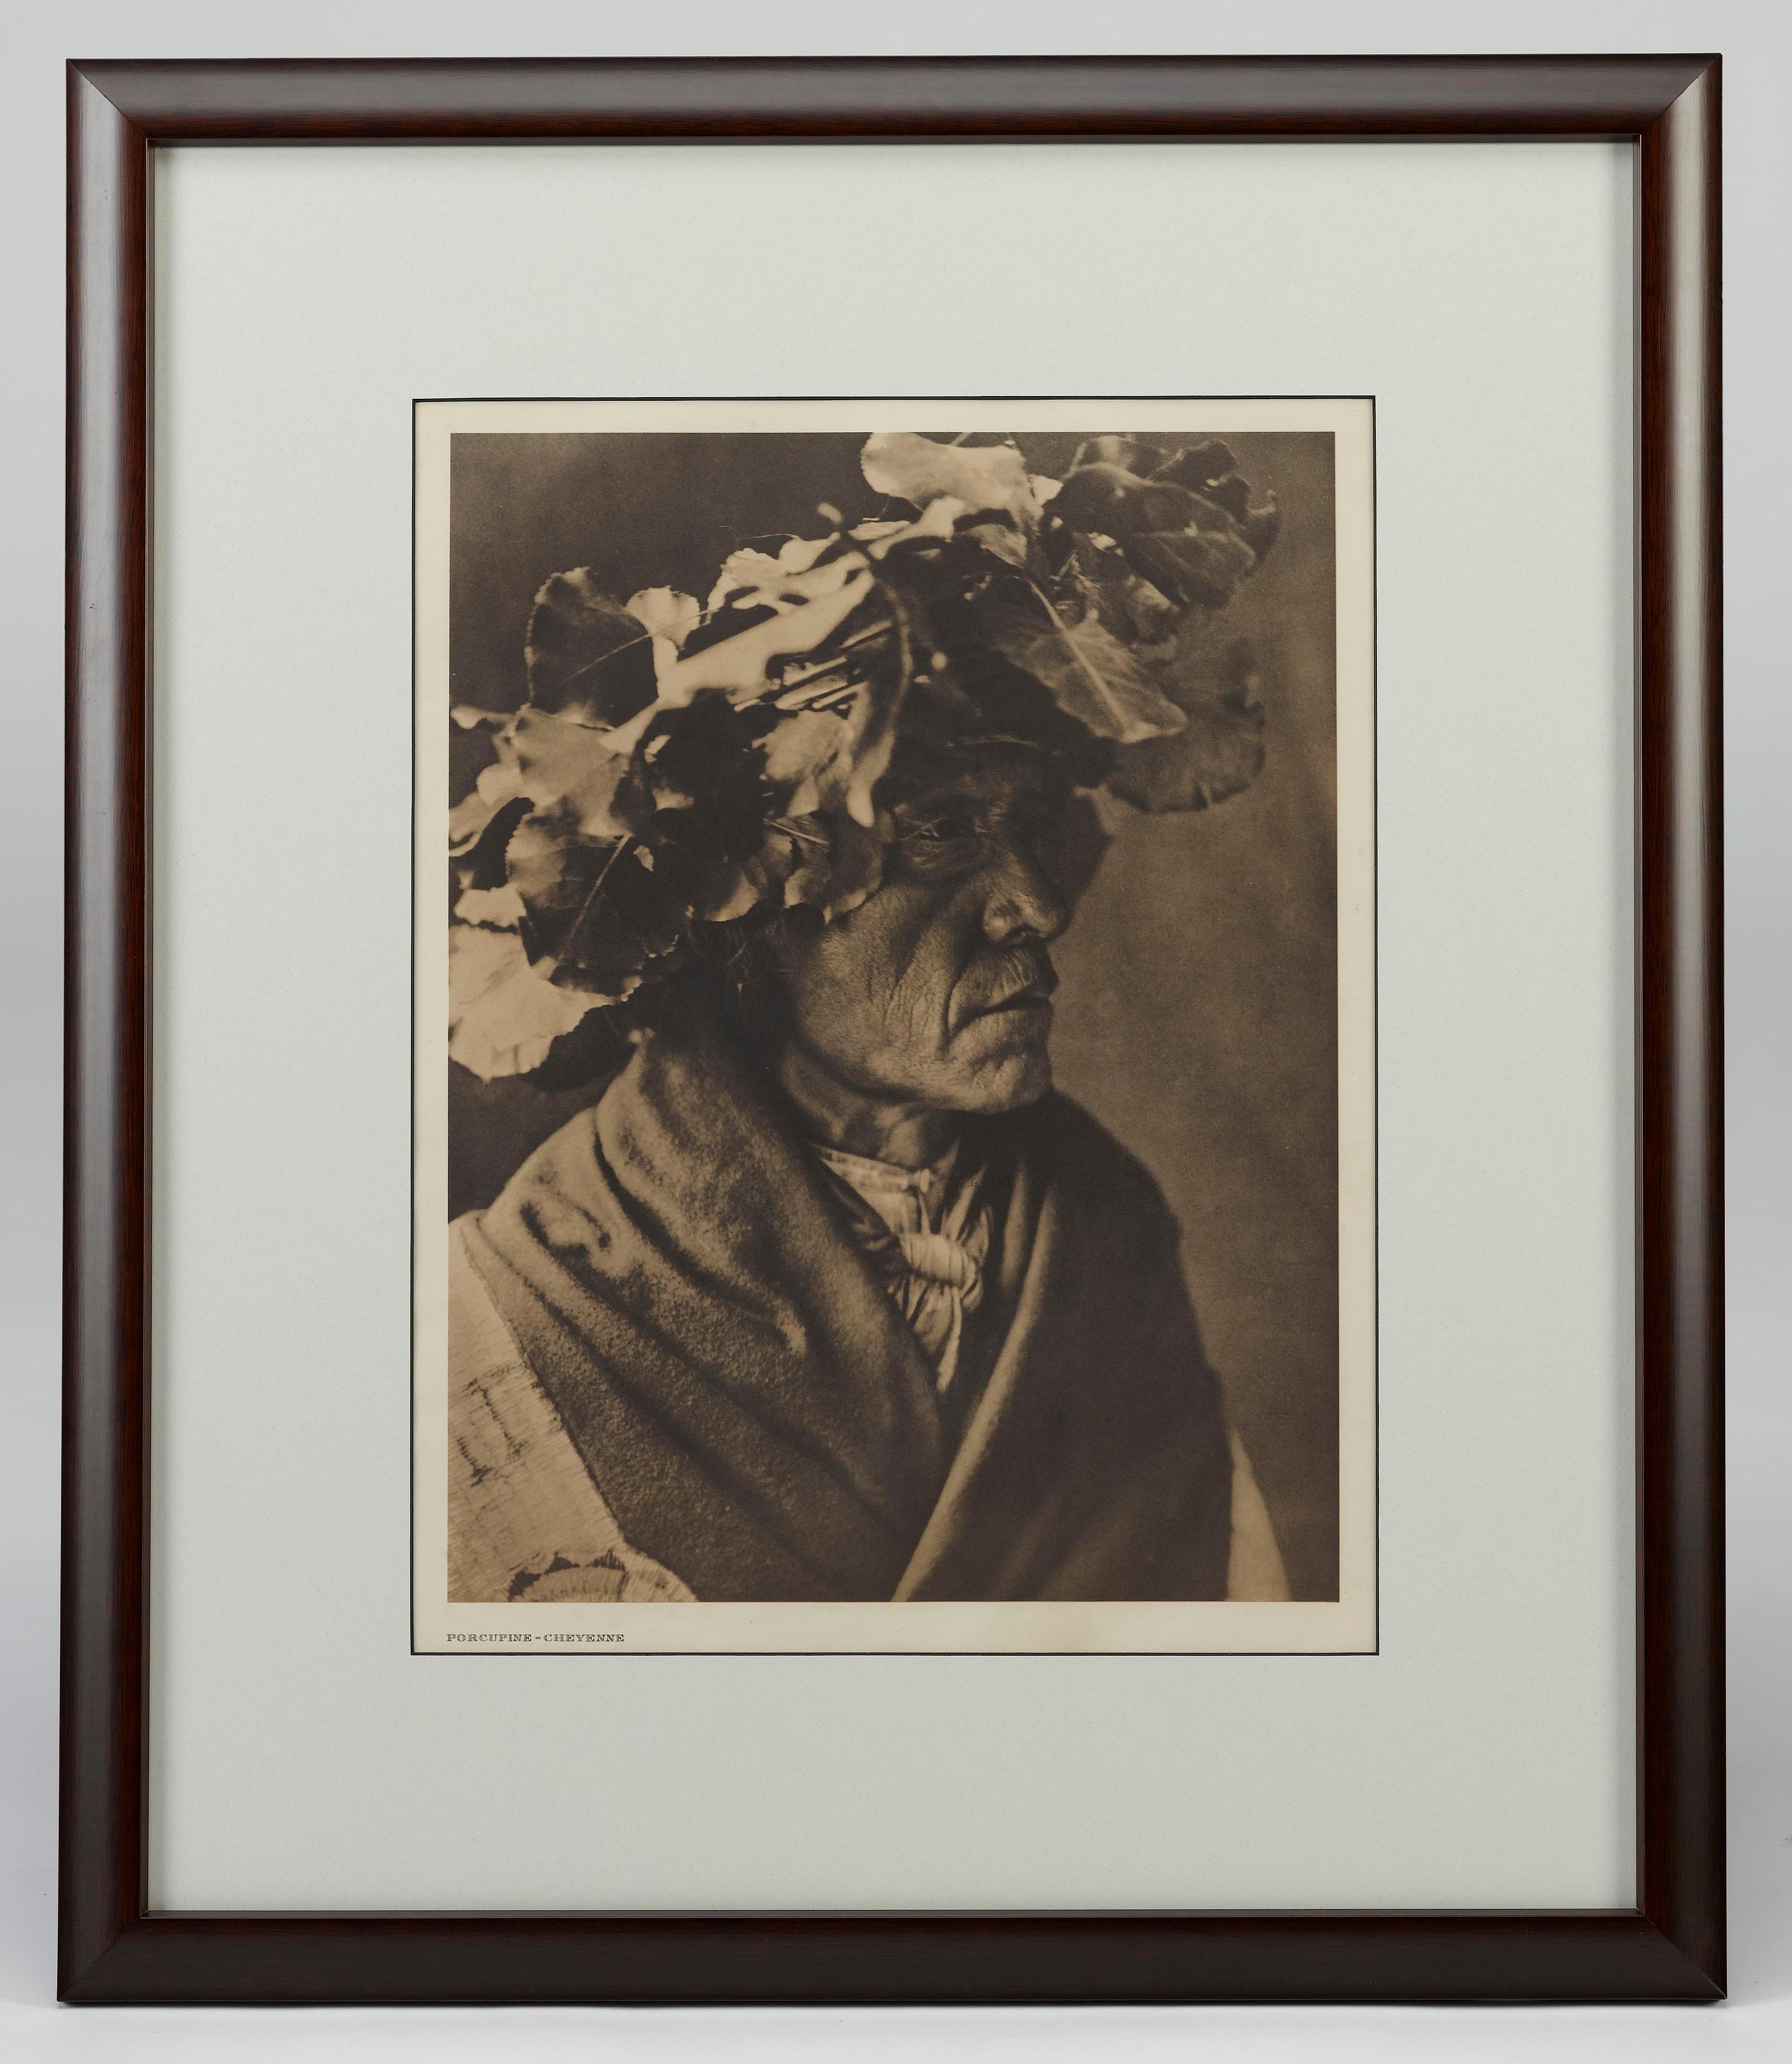 L'ouvrage présente un beau portrait en photogravure d'un homme Cheyenne avec une coiffe en feuilles de cotonnier, réalisé par Edward Curtis. L'image est la planche 216 du portfolio supplémentaire 6 du projet épique d'Edward Curtis, The North